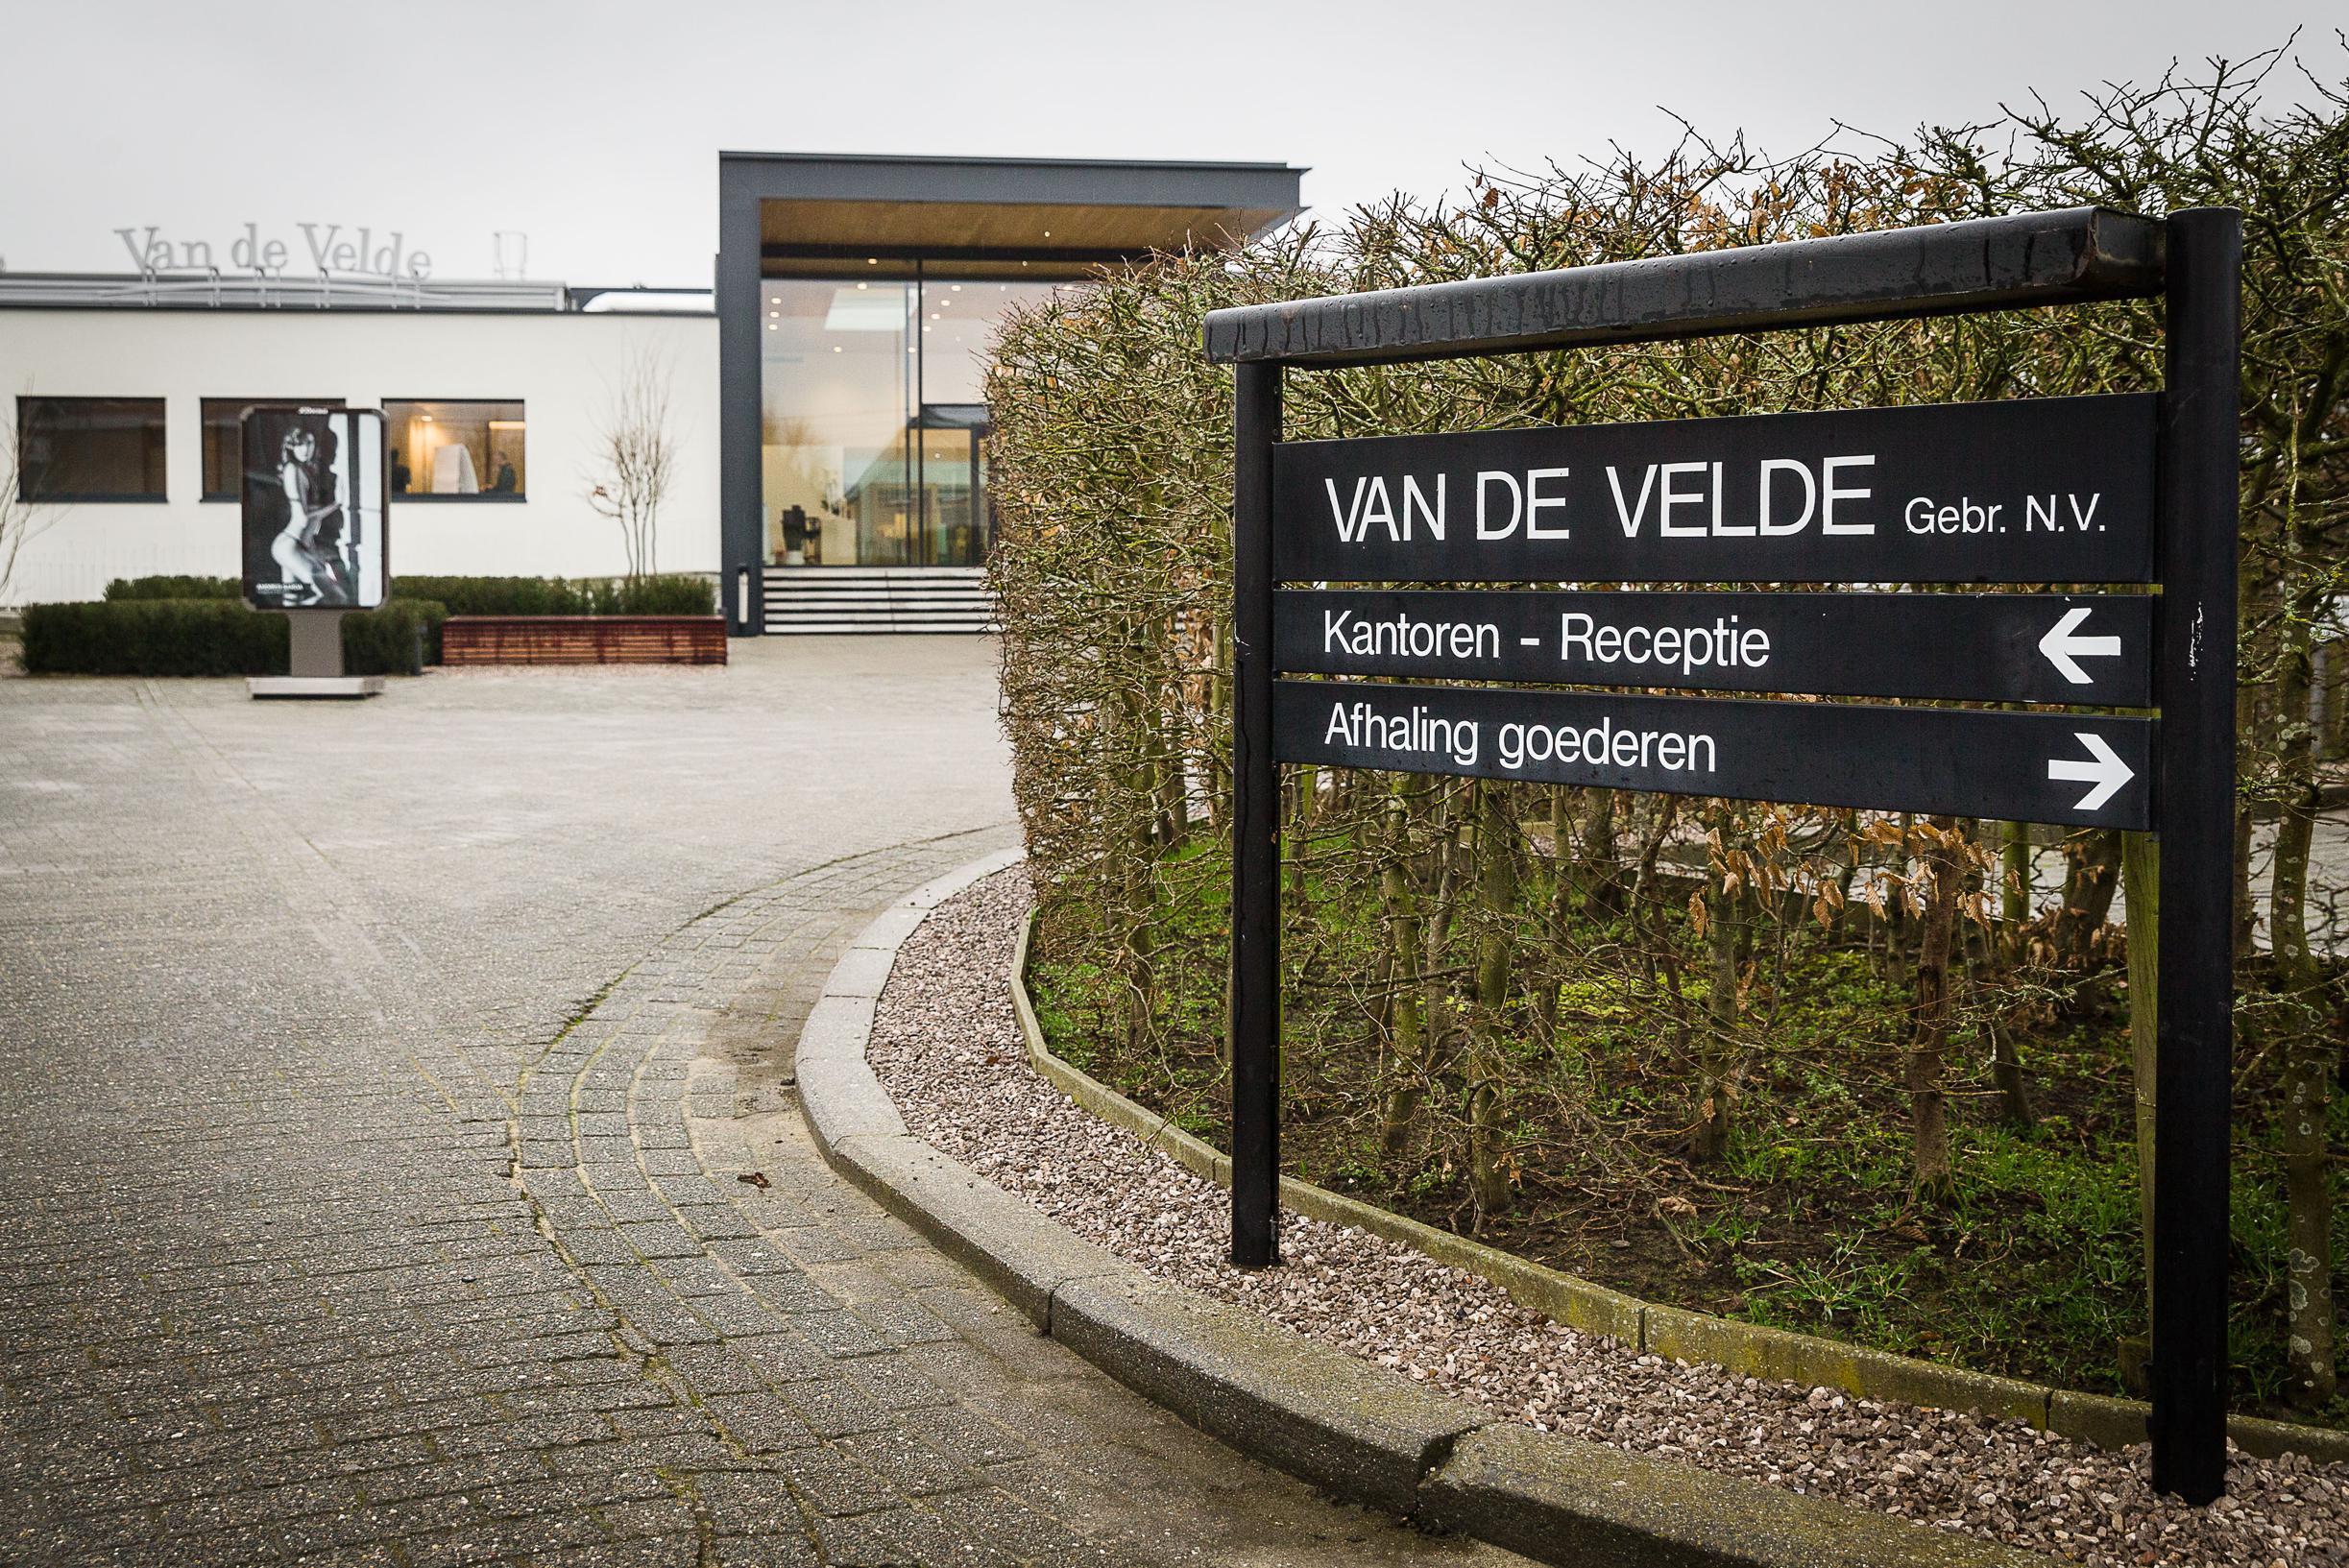 CEO Peter Corijn leaves lingerie company Van de Velde